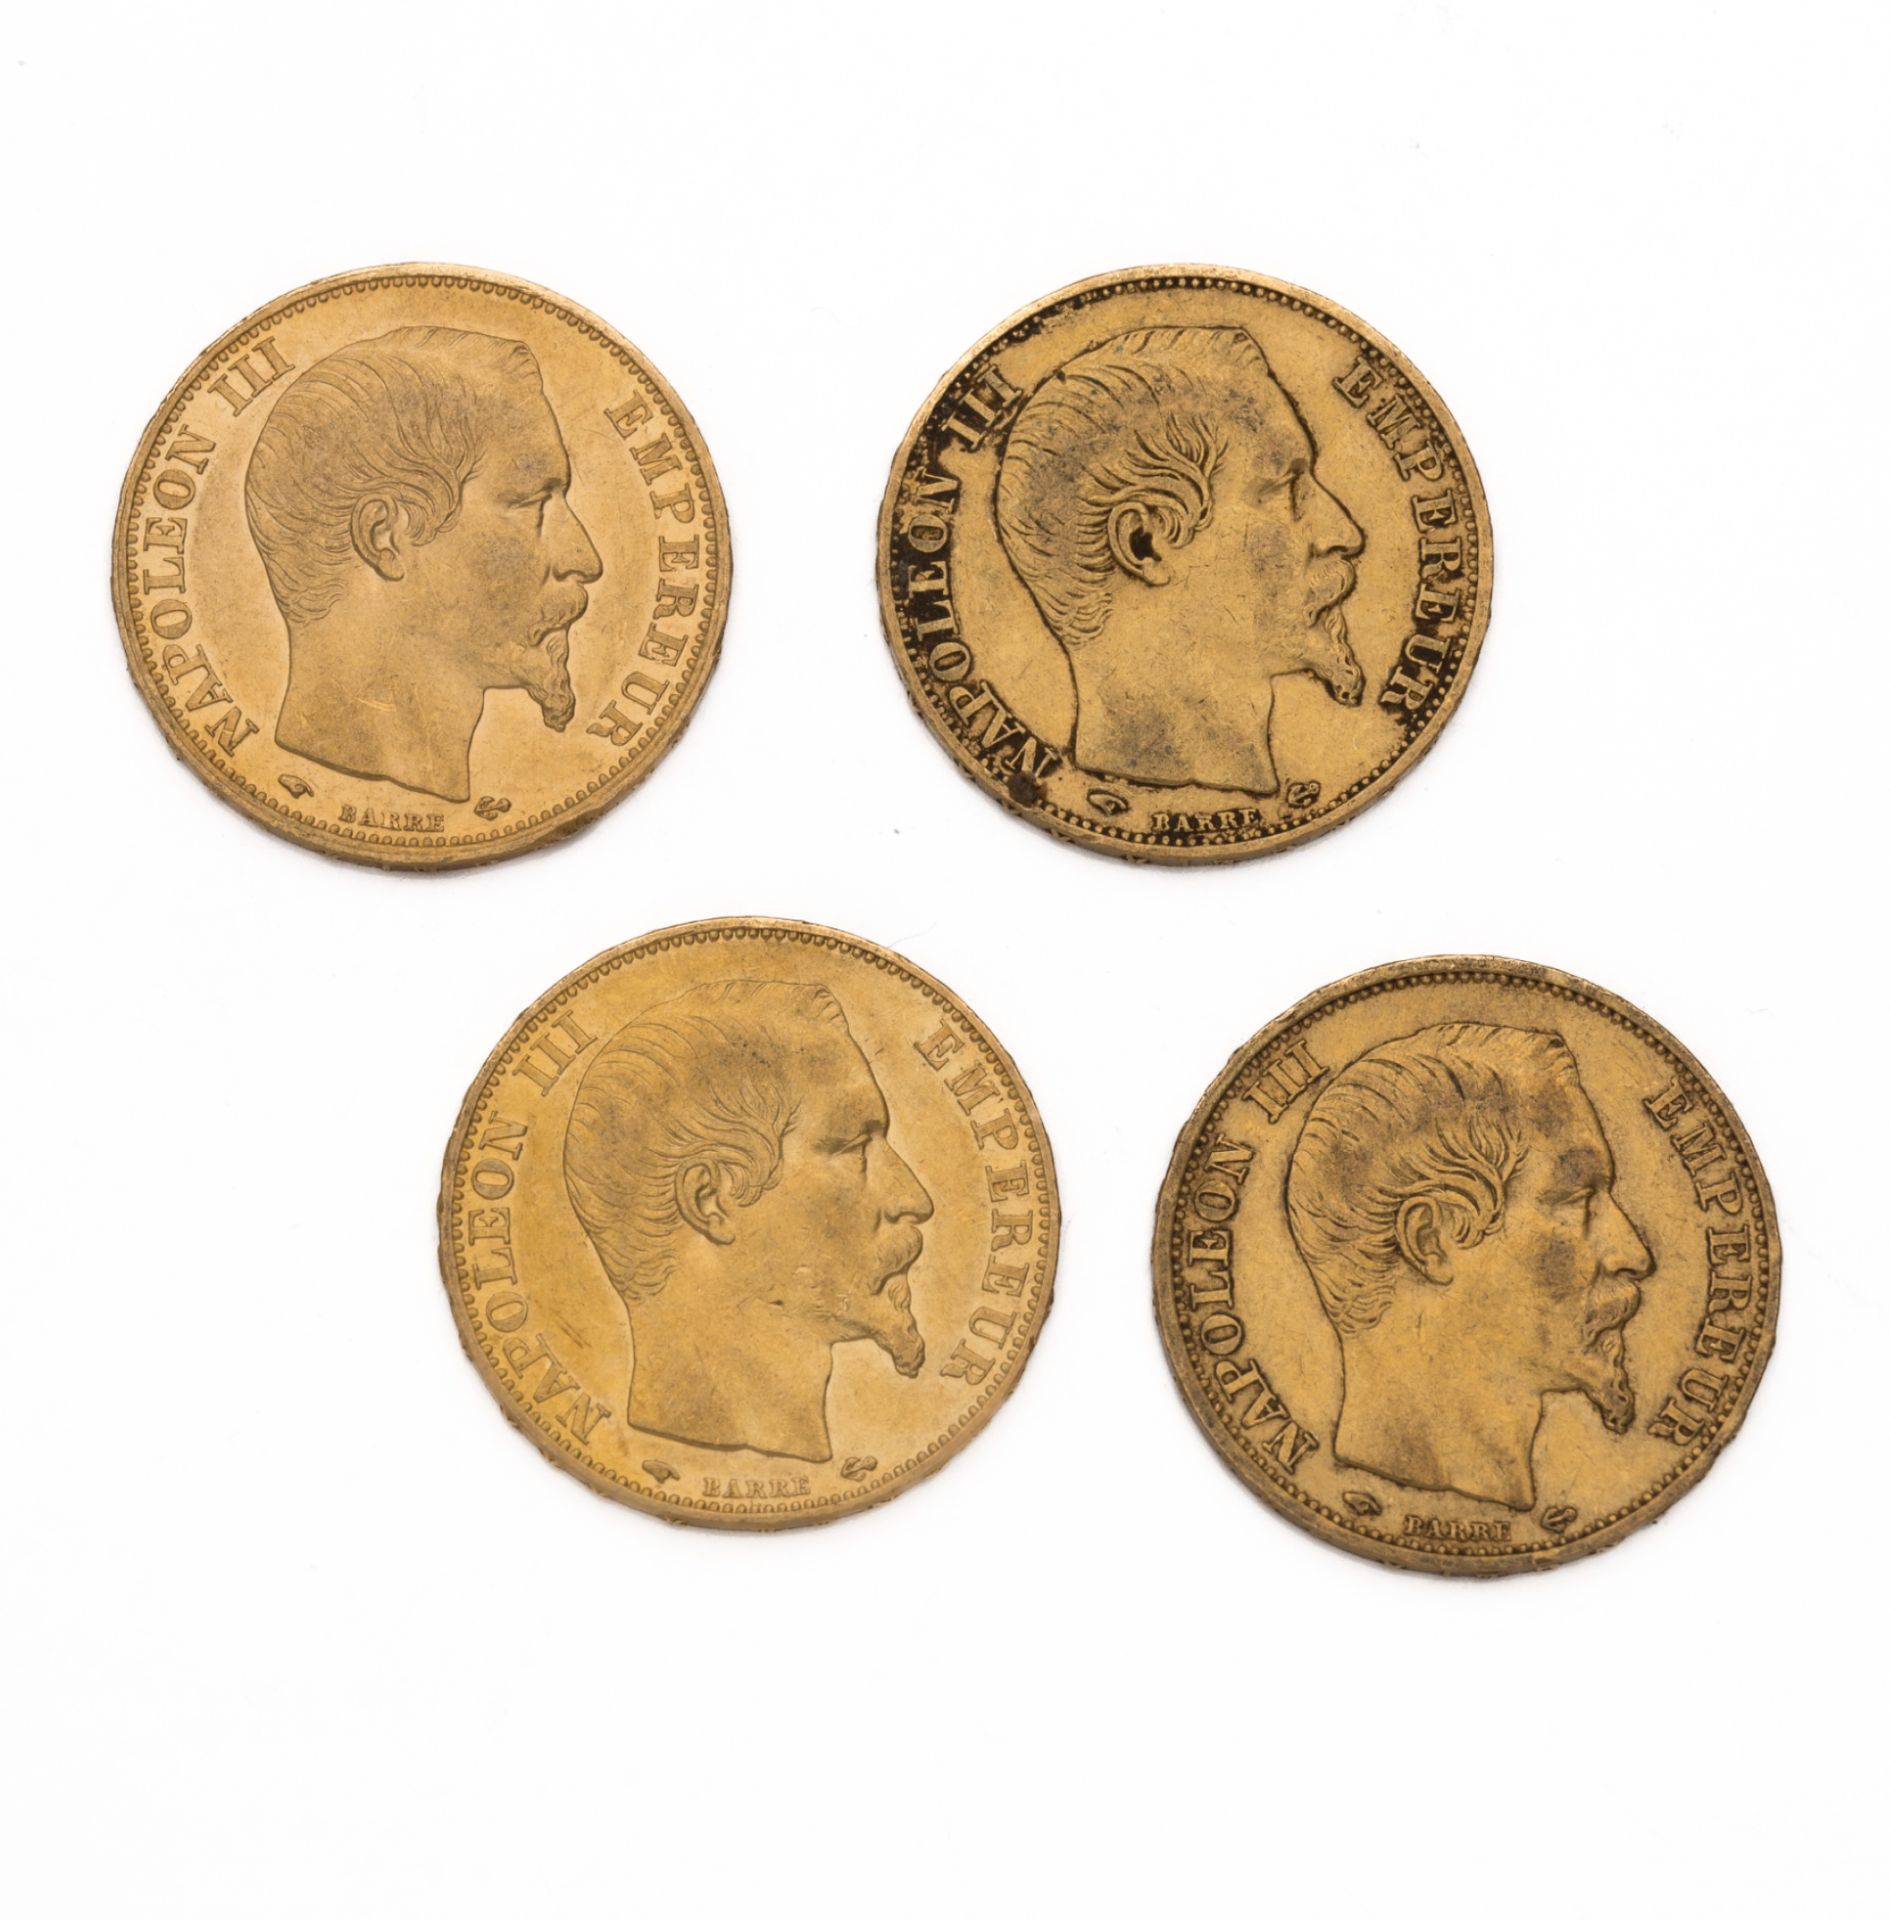 Null SEGUNDO IMPERIO
20 francos oro Naopelon III, decapitado. 4 ejemplares. 1859&hellip;